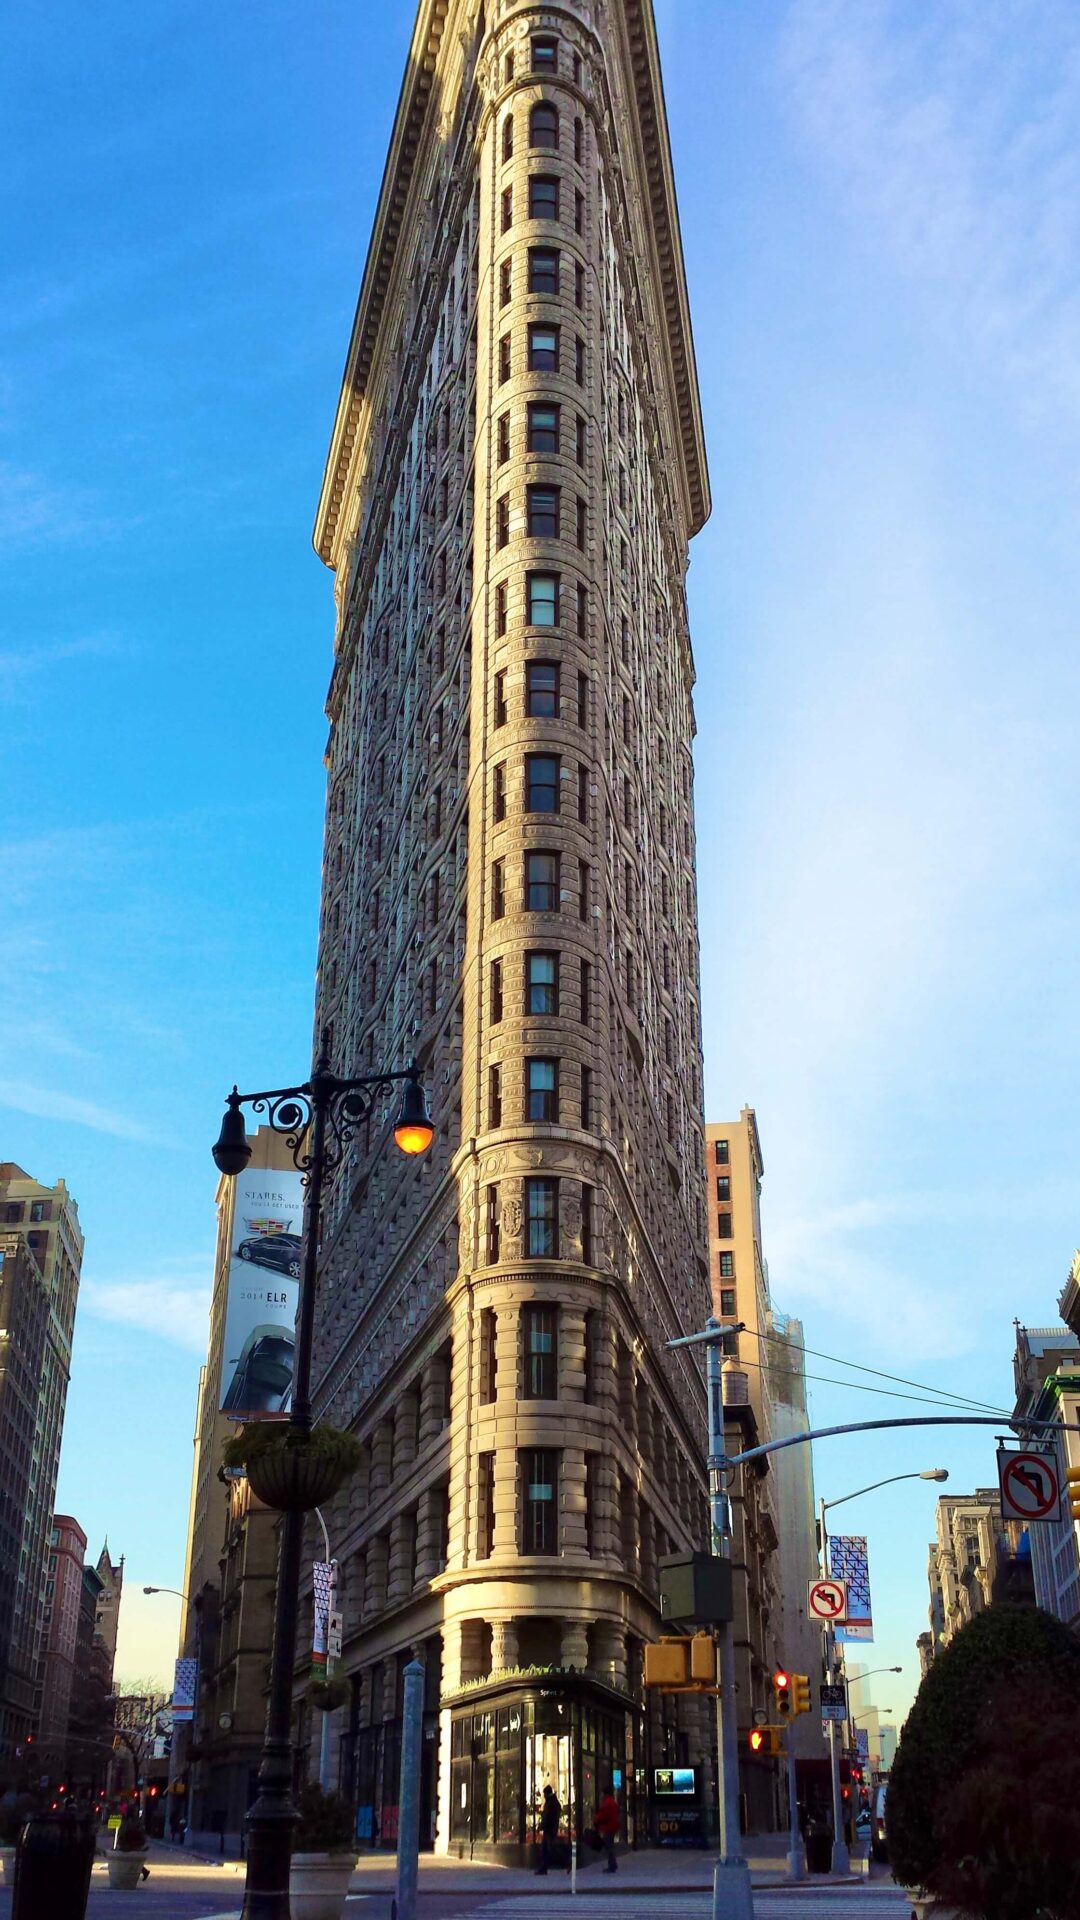 フラットアイアンビルディング。高さ87m22階建て。現存するニューヨークのビルでは最も古い歴史を持つ。